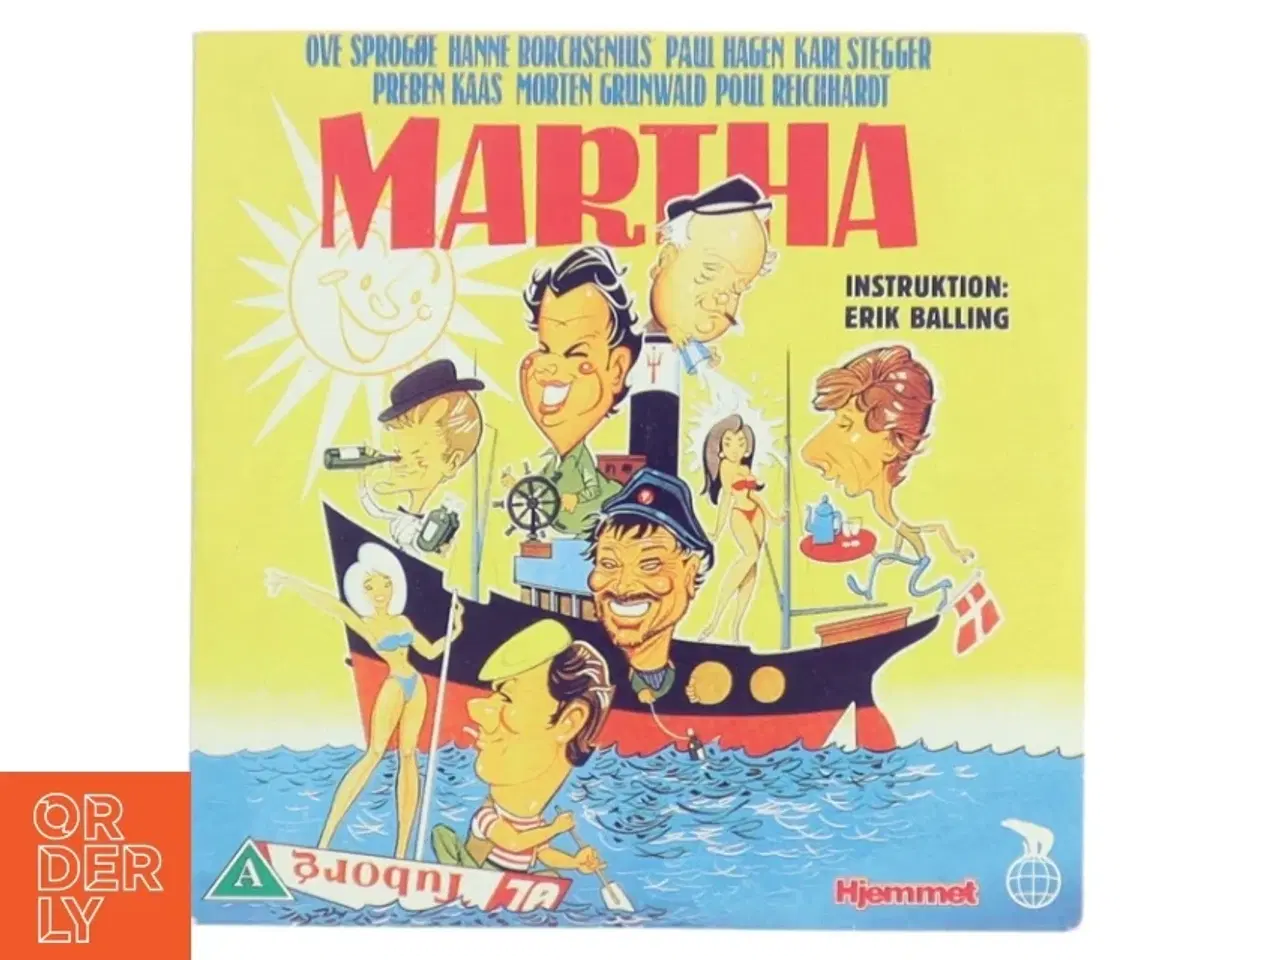 Billede 1 - DVD 'Martha' fra Nordisk Film